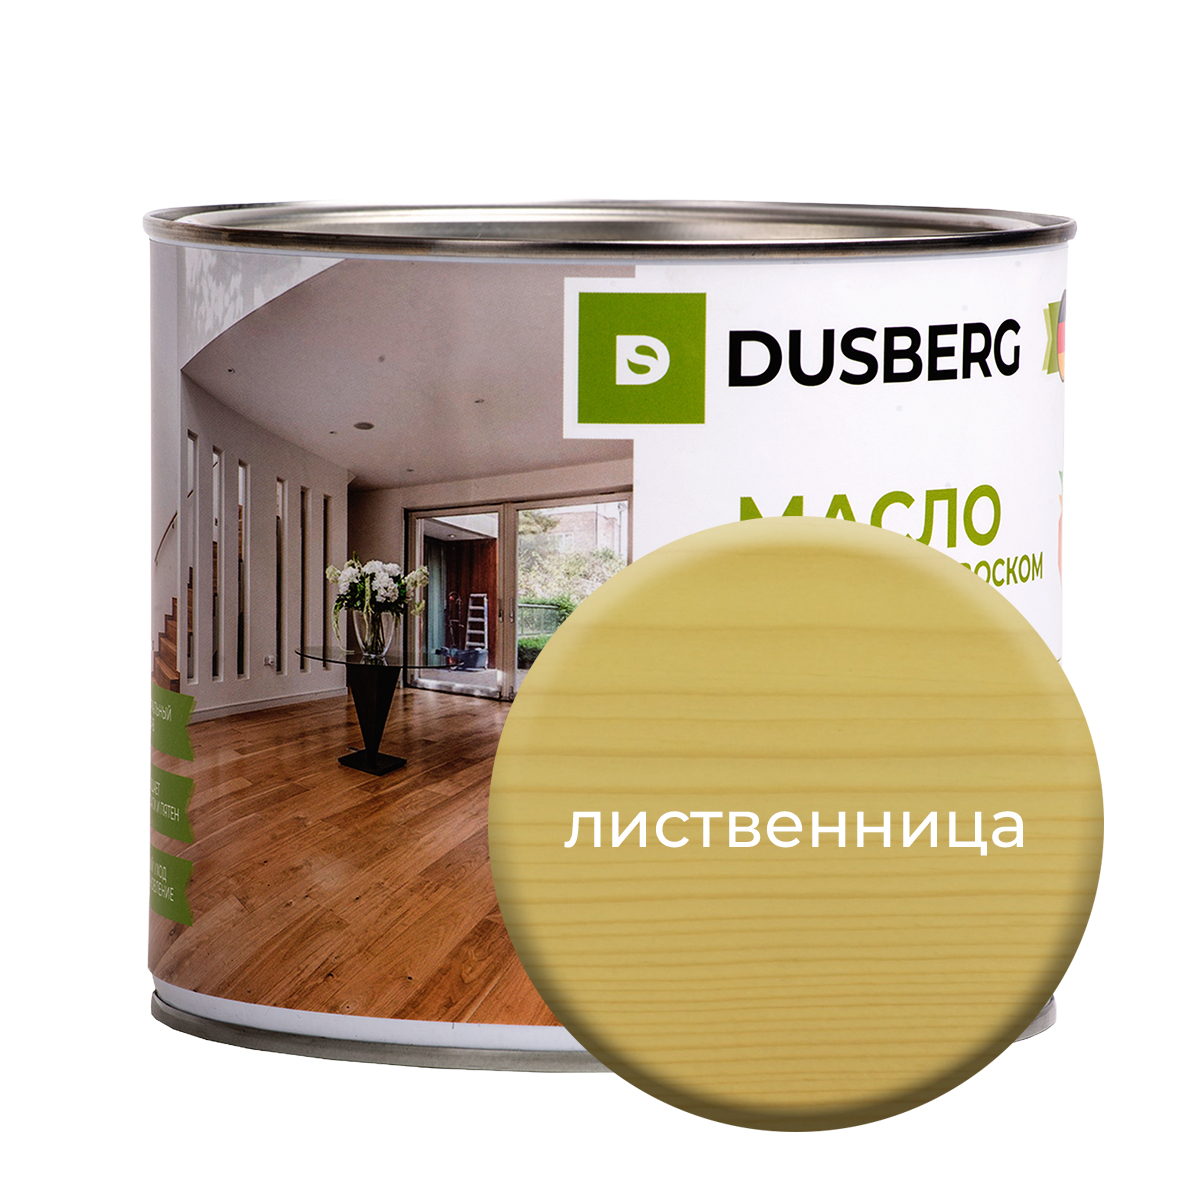 Масло Dusberg с твердым воском на бесцветной основе, 2 л Лиственница масло dusberg с твердым воском на бес ной основе 2 л лиственница